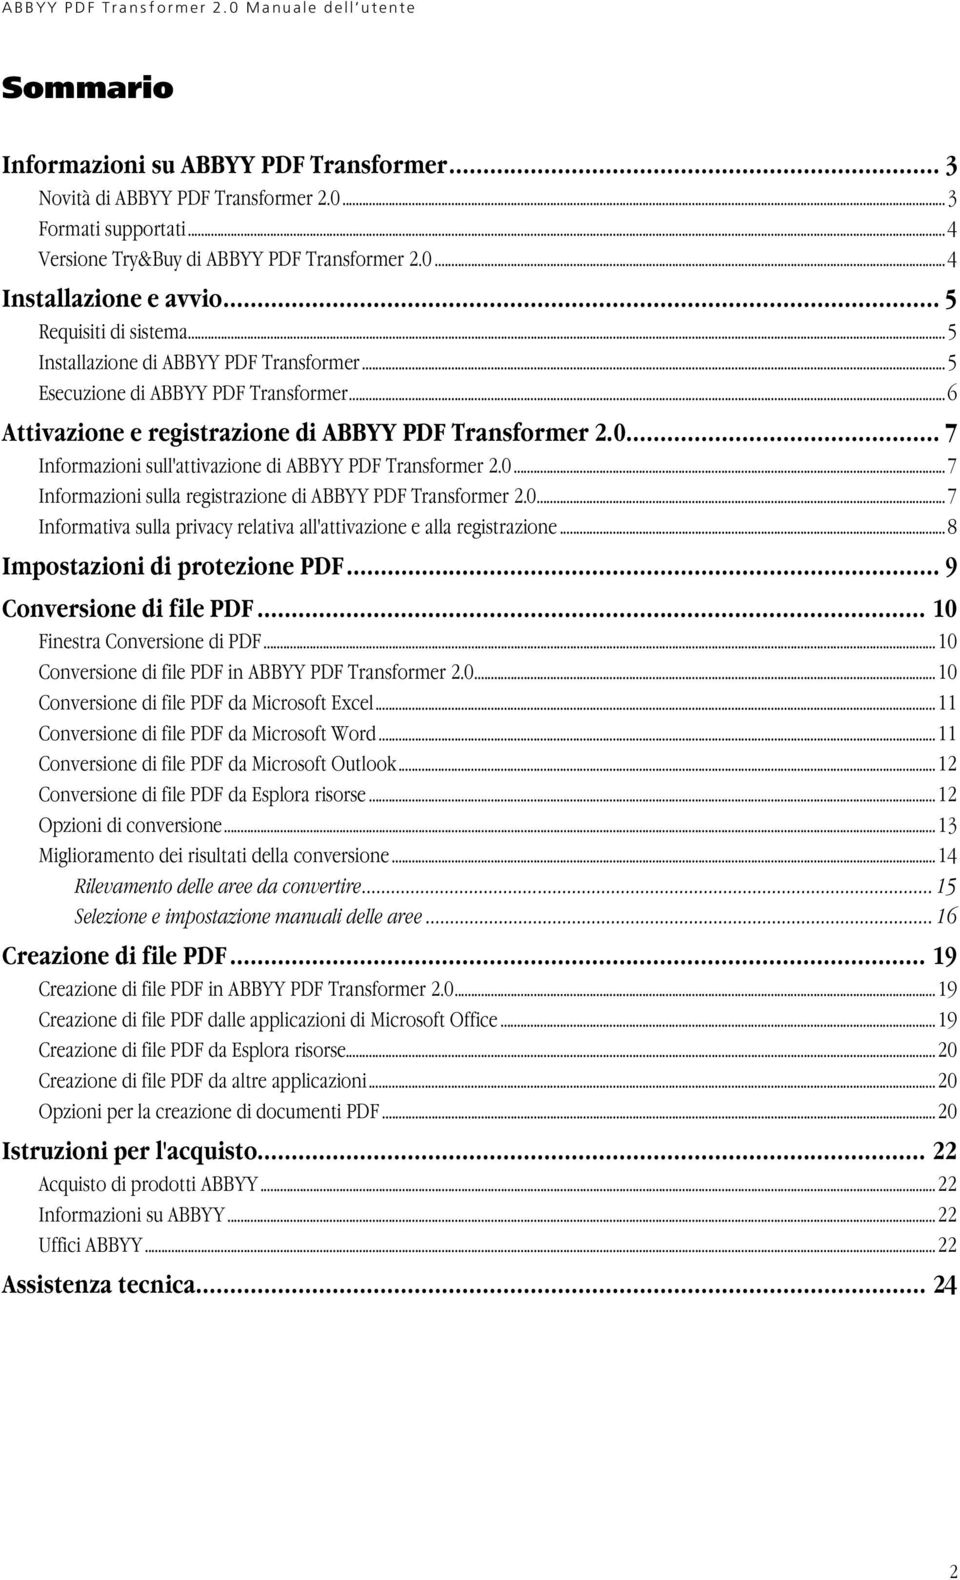 .. 7 Informazioni sull'attivazione di ABBYY PDF Transformer 2.0...7 Informazioni sulla registrazione di ABBYY PDF Transformer 2.0...7 Informativa sulla privacy relativa all'attivazione e alla registrazione.